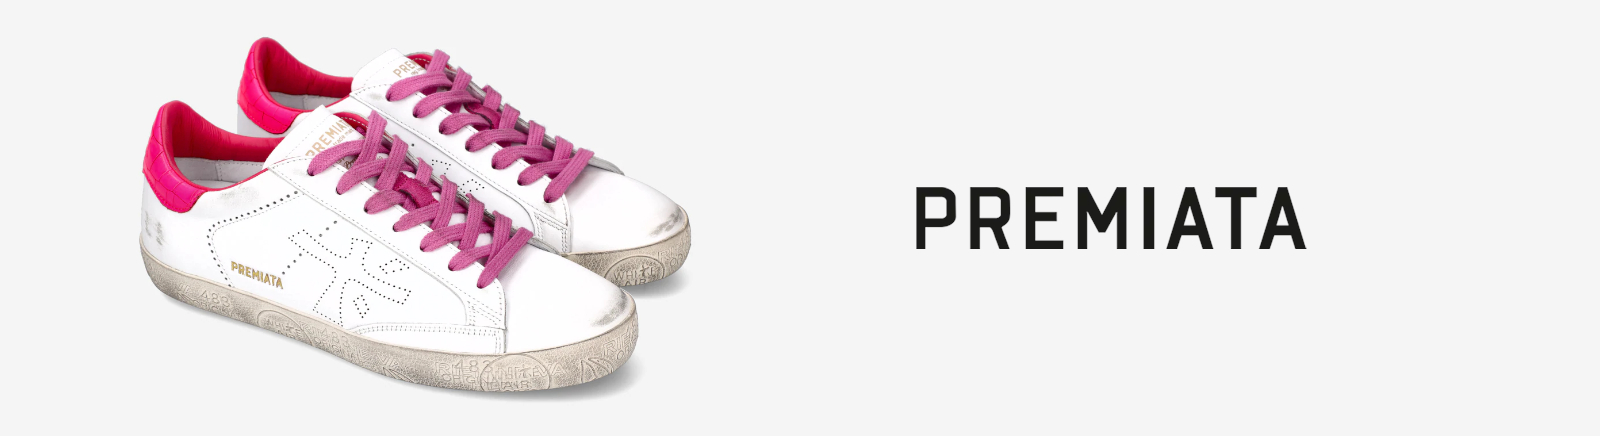 Premiata Schnürschuhe für Damen im Online-Shop von GISY kaufen